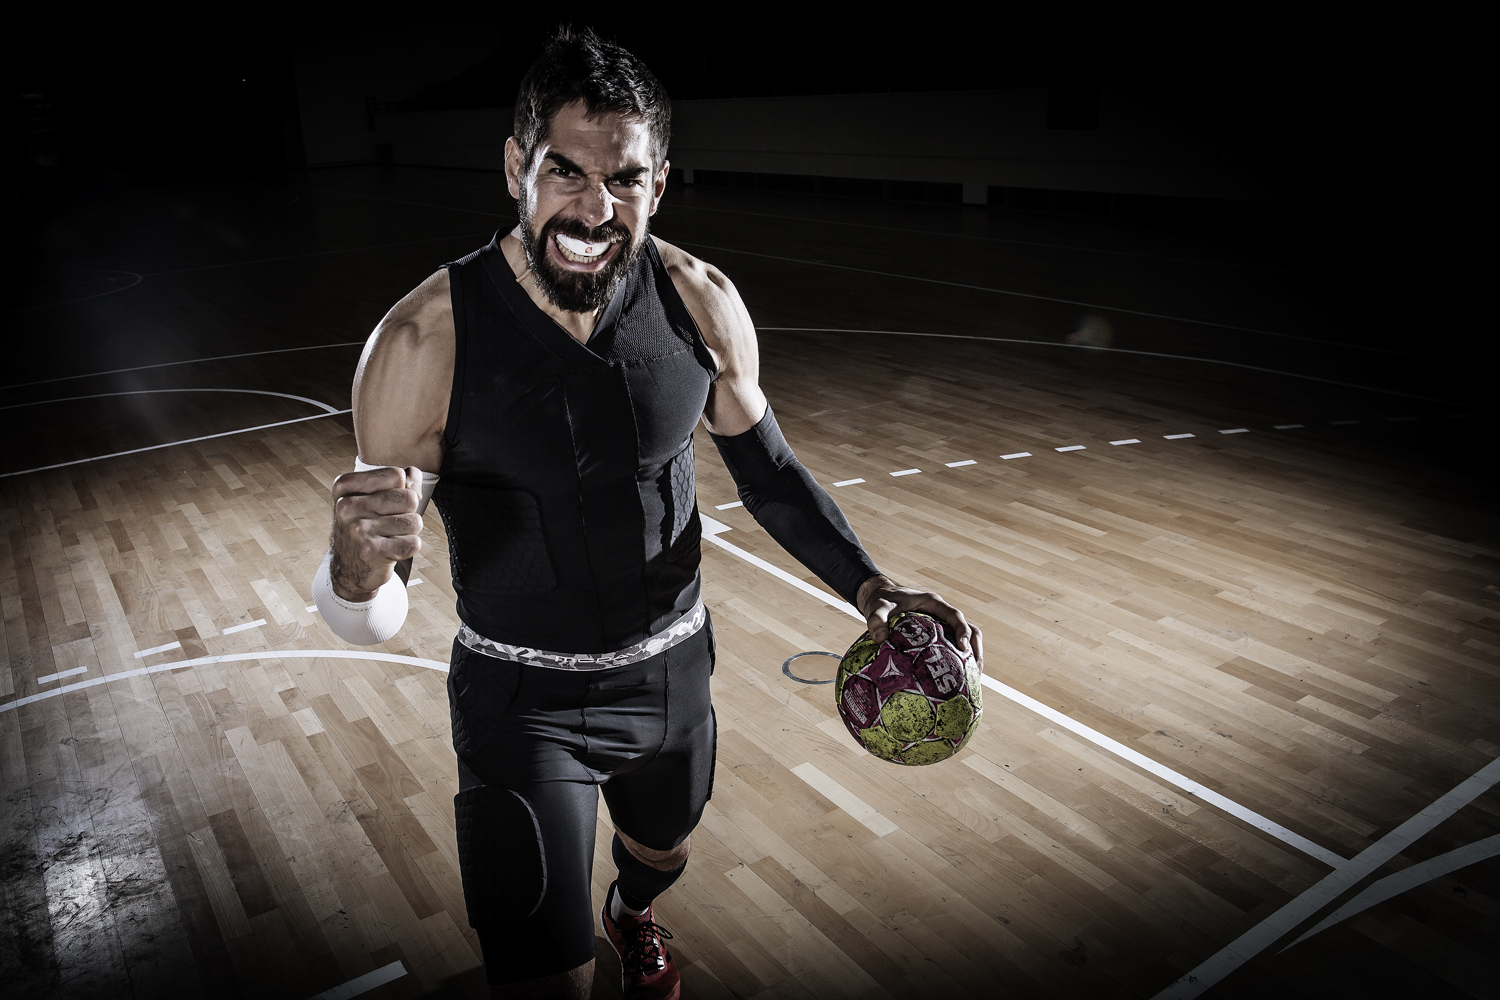 L'importance du protège dents dans le handball - Protections du sportif